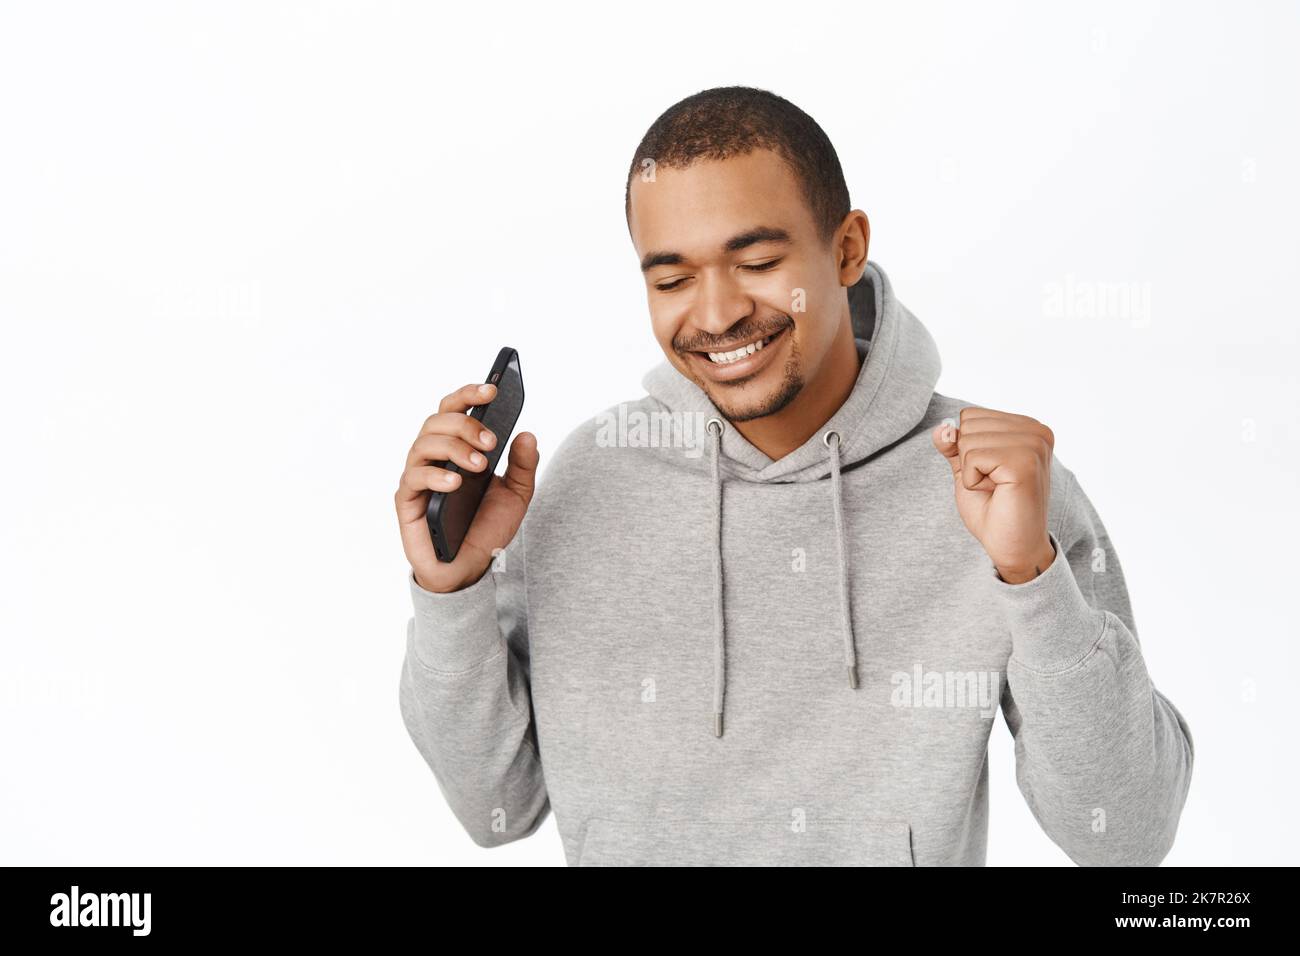 Portrait d'un homme heureux écoutant de la musique sur l'application pour smartphone, dansant avec un téléphone portable, debout sur fond blanc Banque D'Images